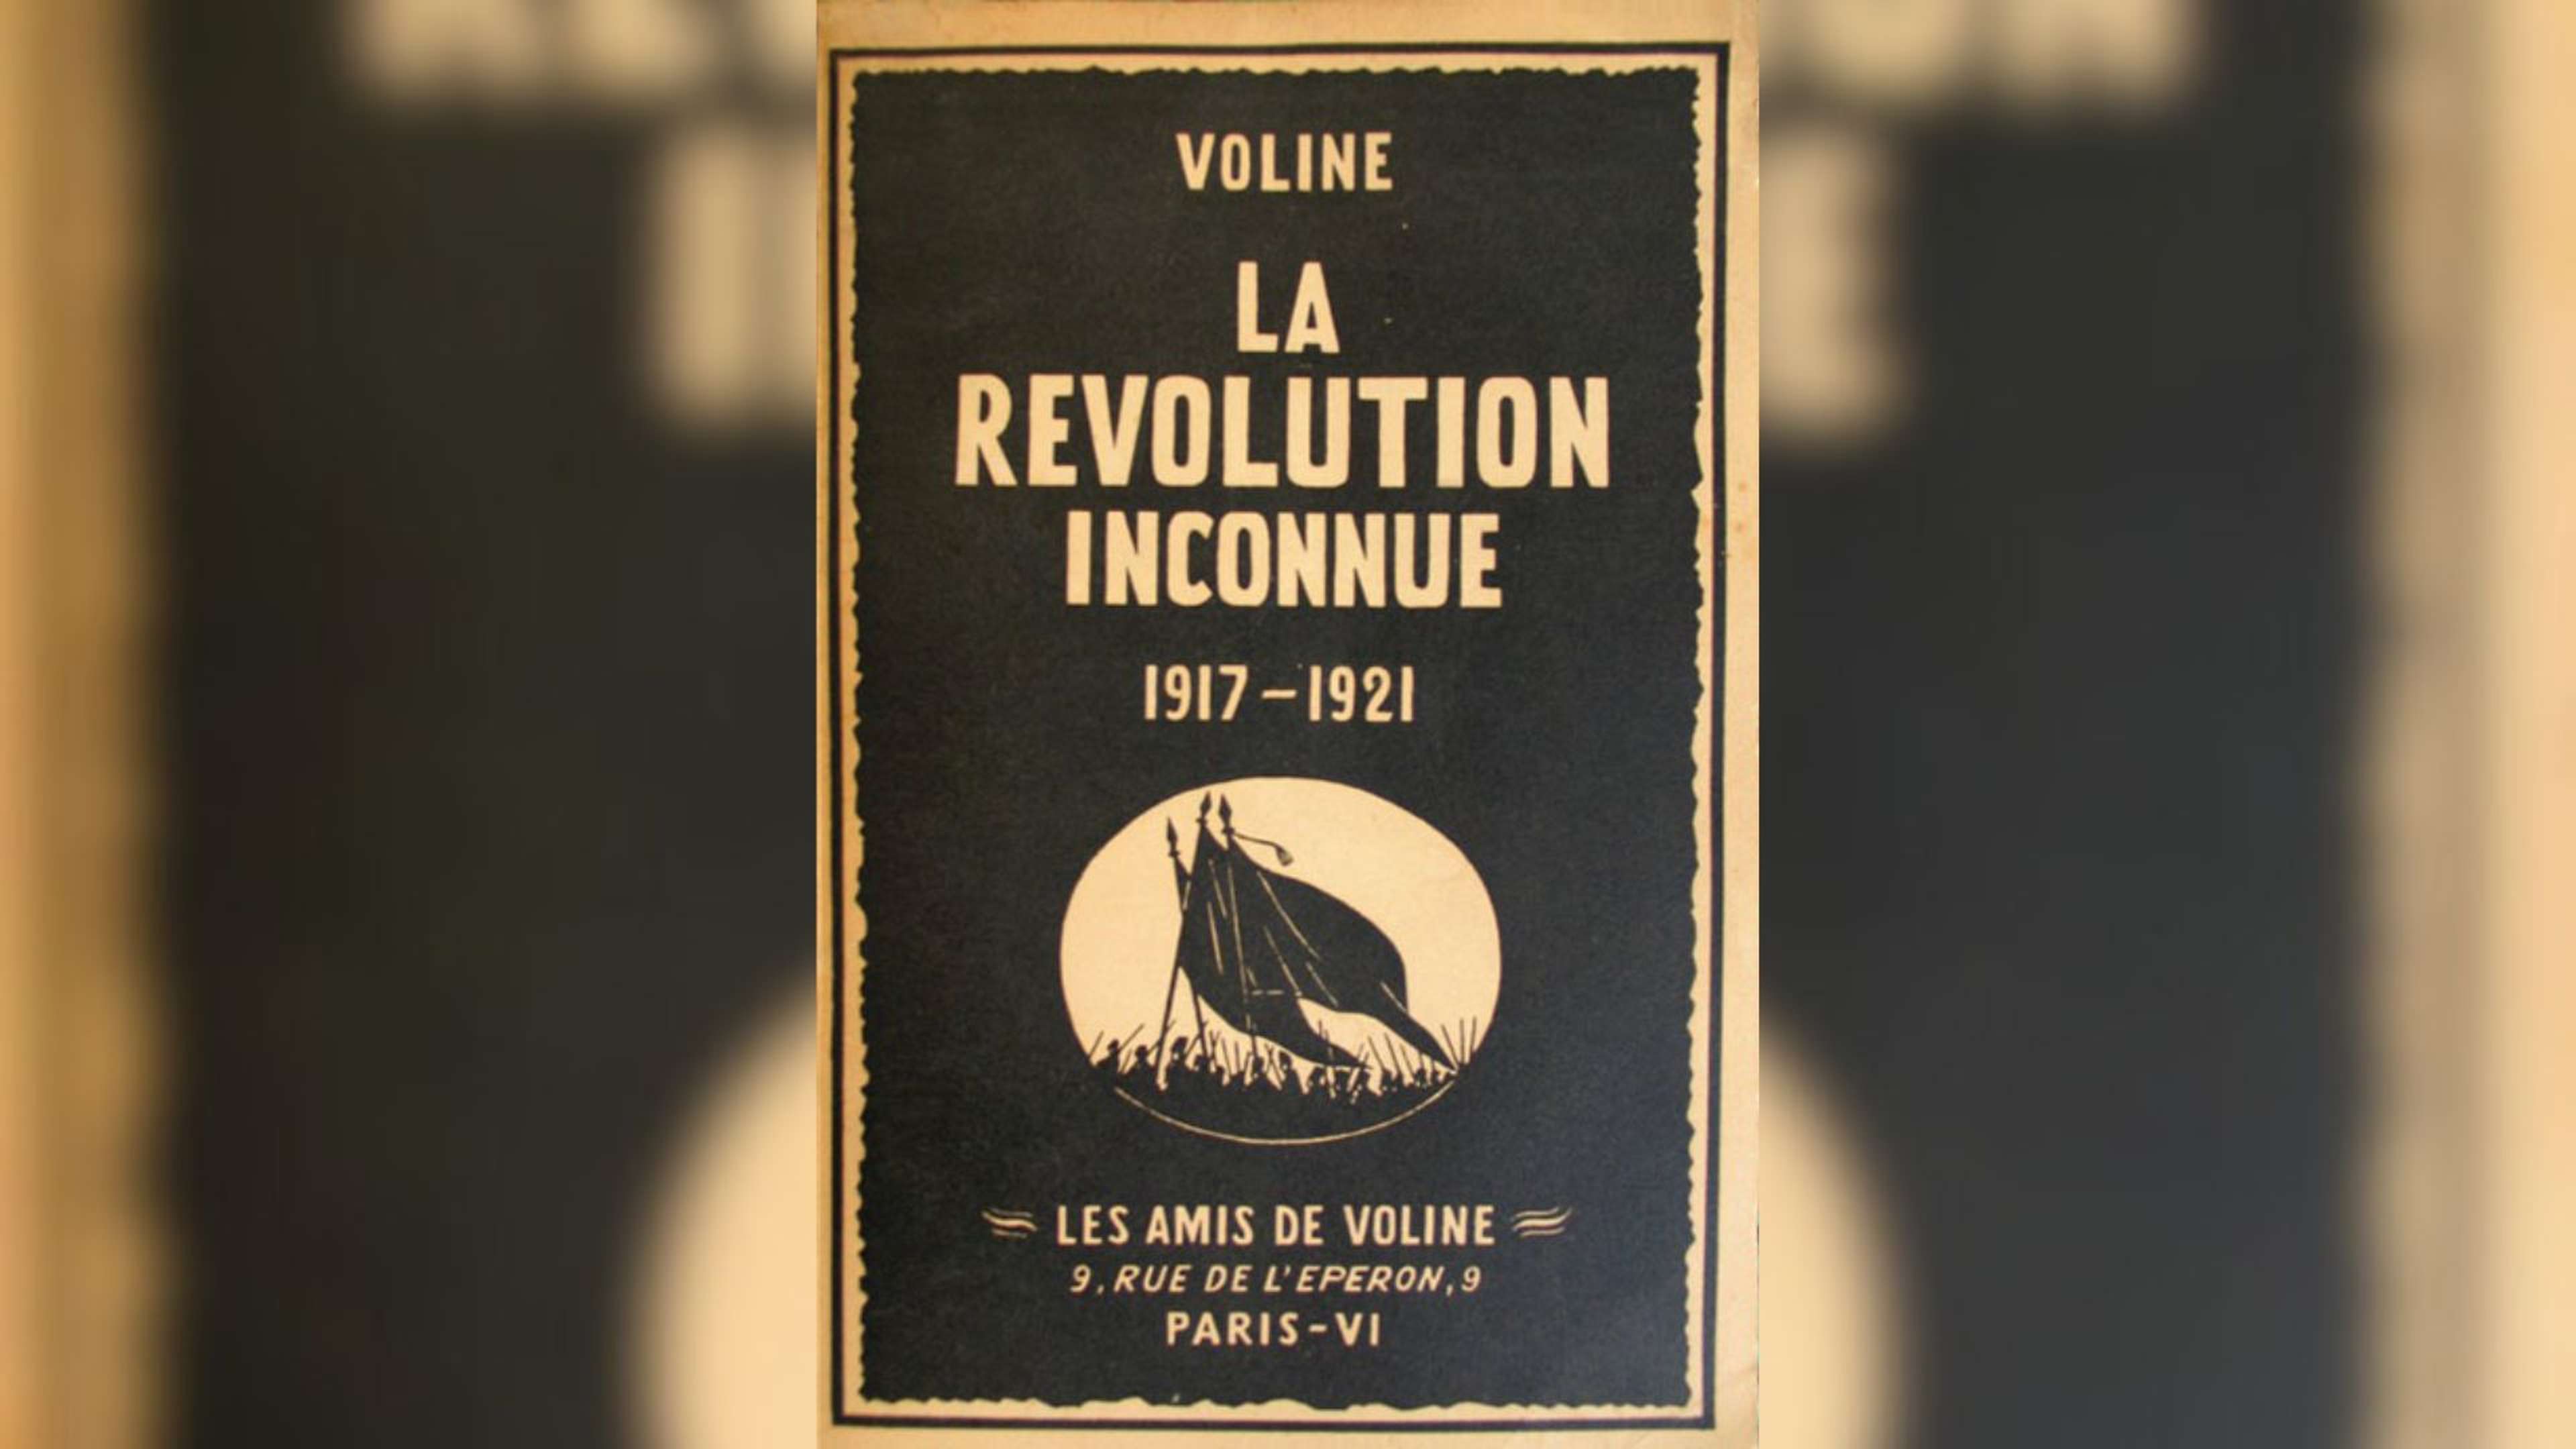 Avez-vous lu "La Révolution inconnue" de Voline ?